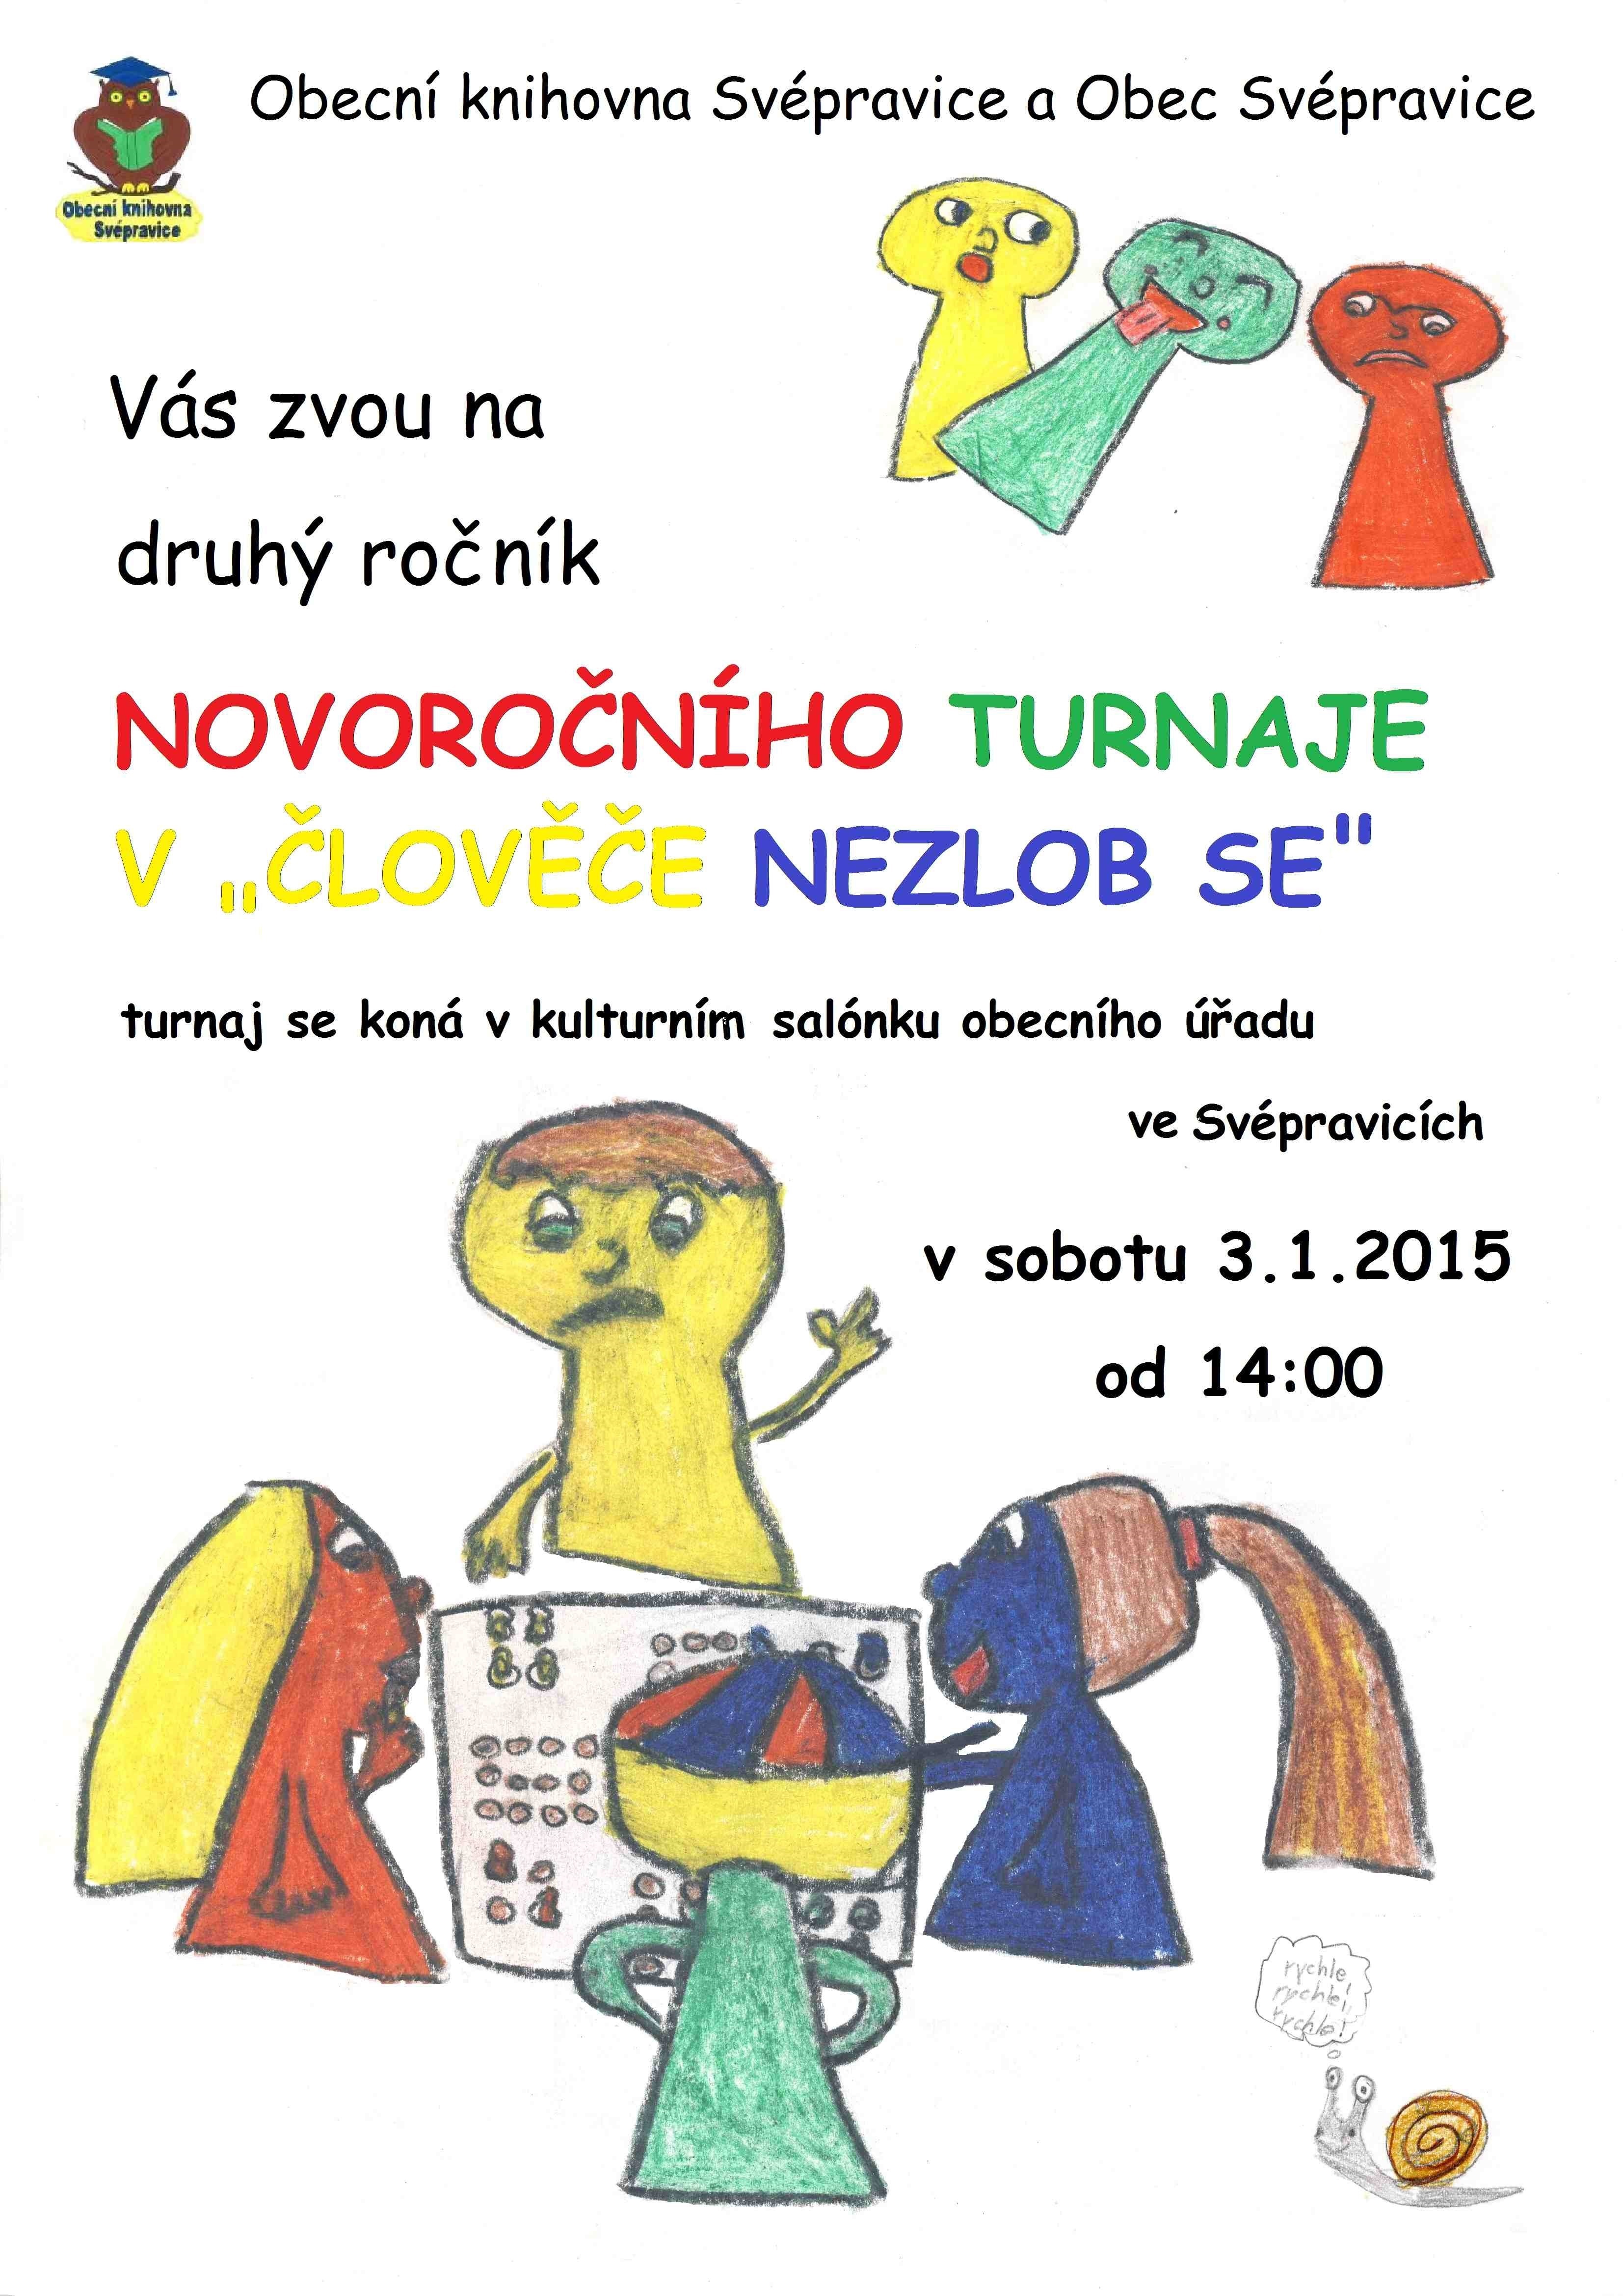 Pozvánka na akci knihovny a obce Svépravice